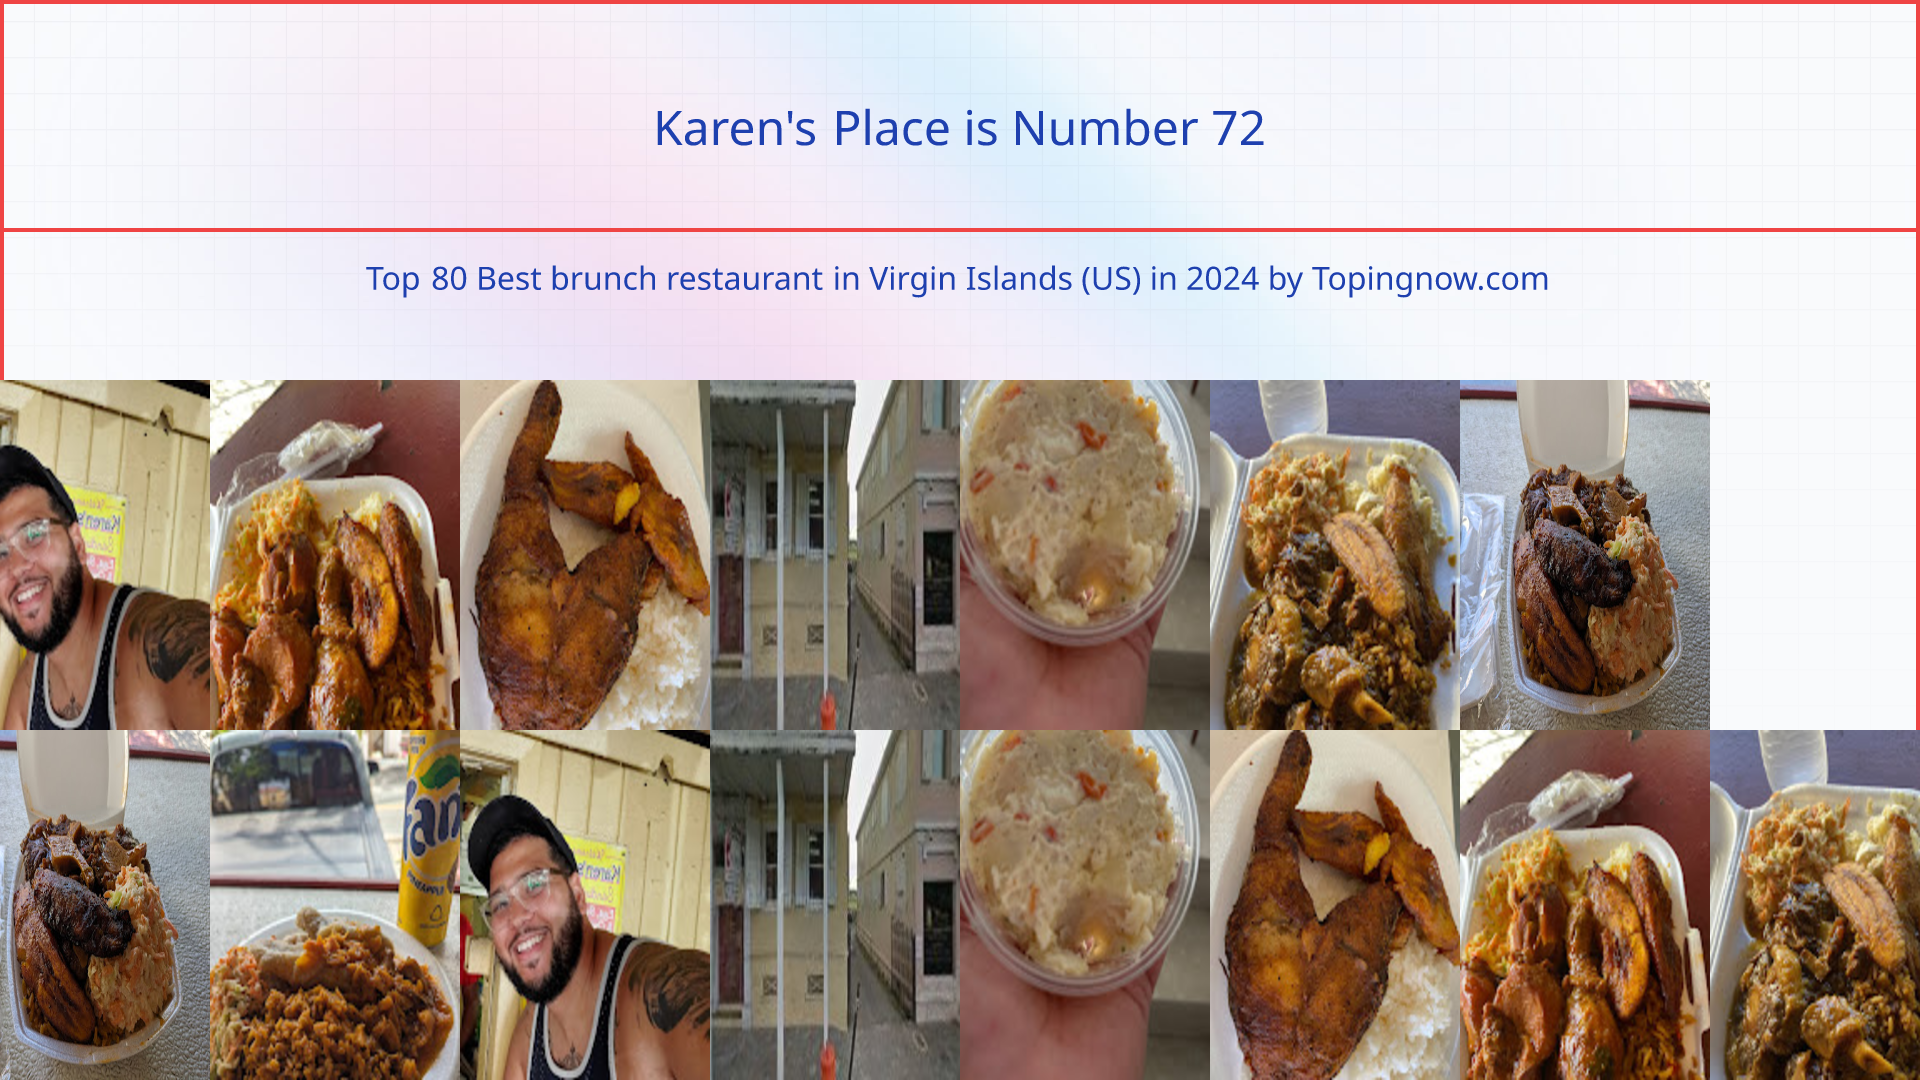 Karen's Place: Top 80 Best brunch restaurant in Virgin Islands (US) in 2024